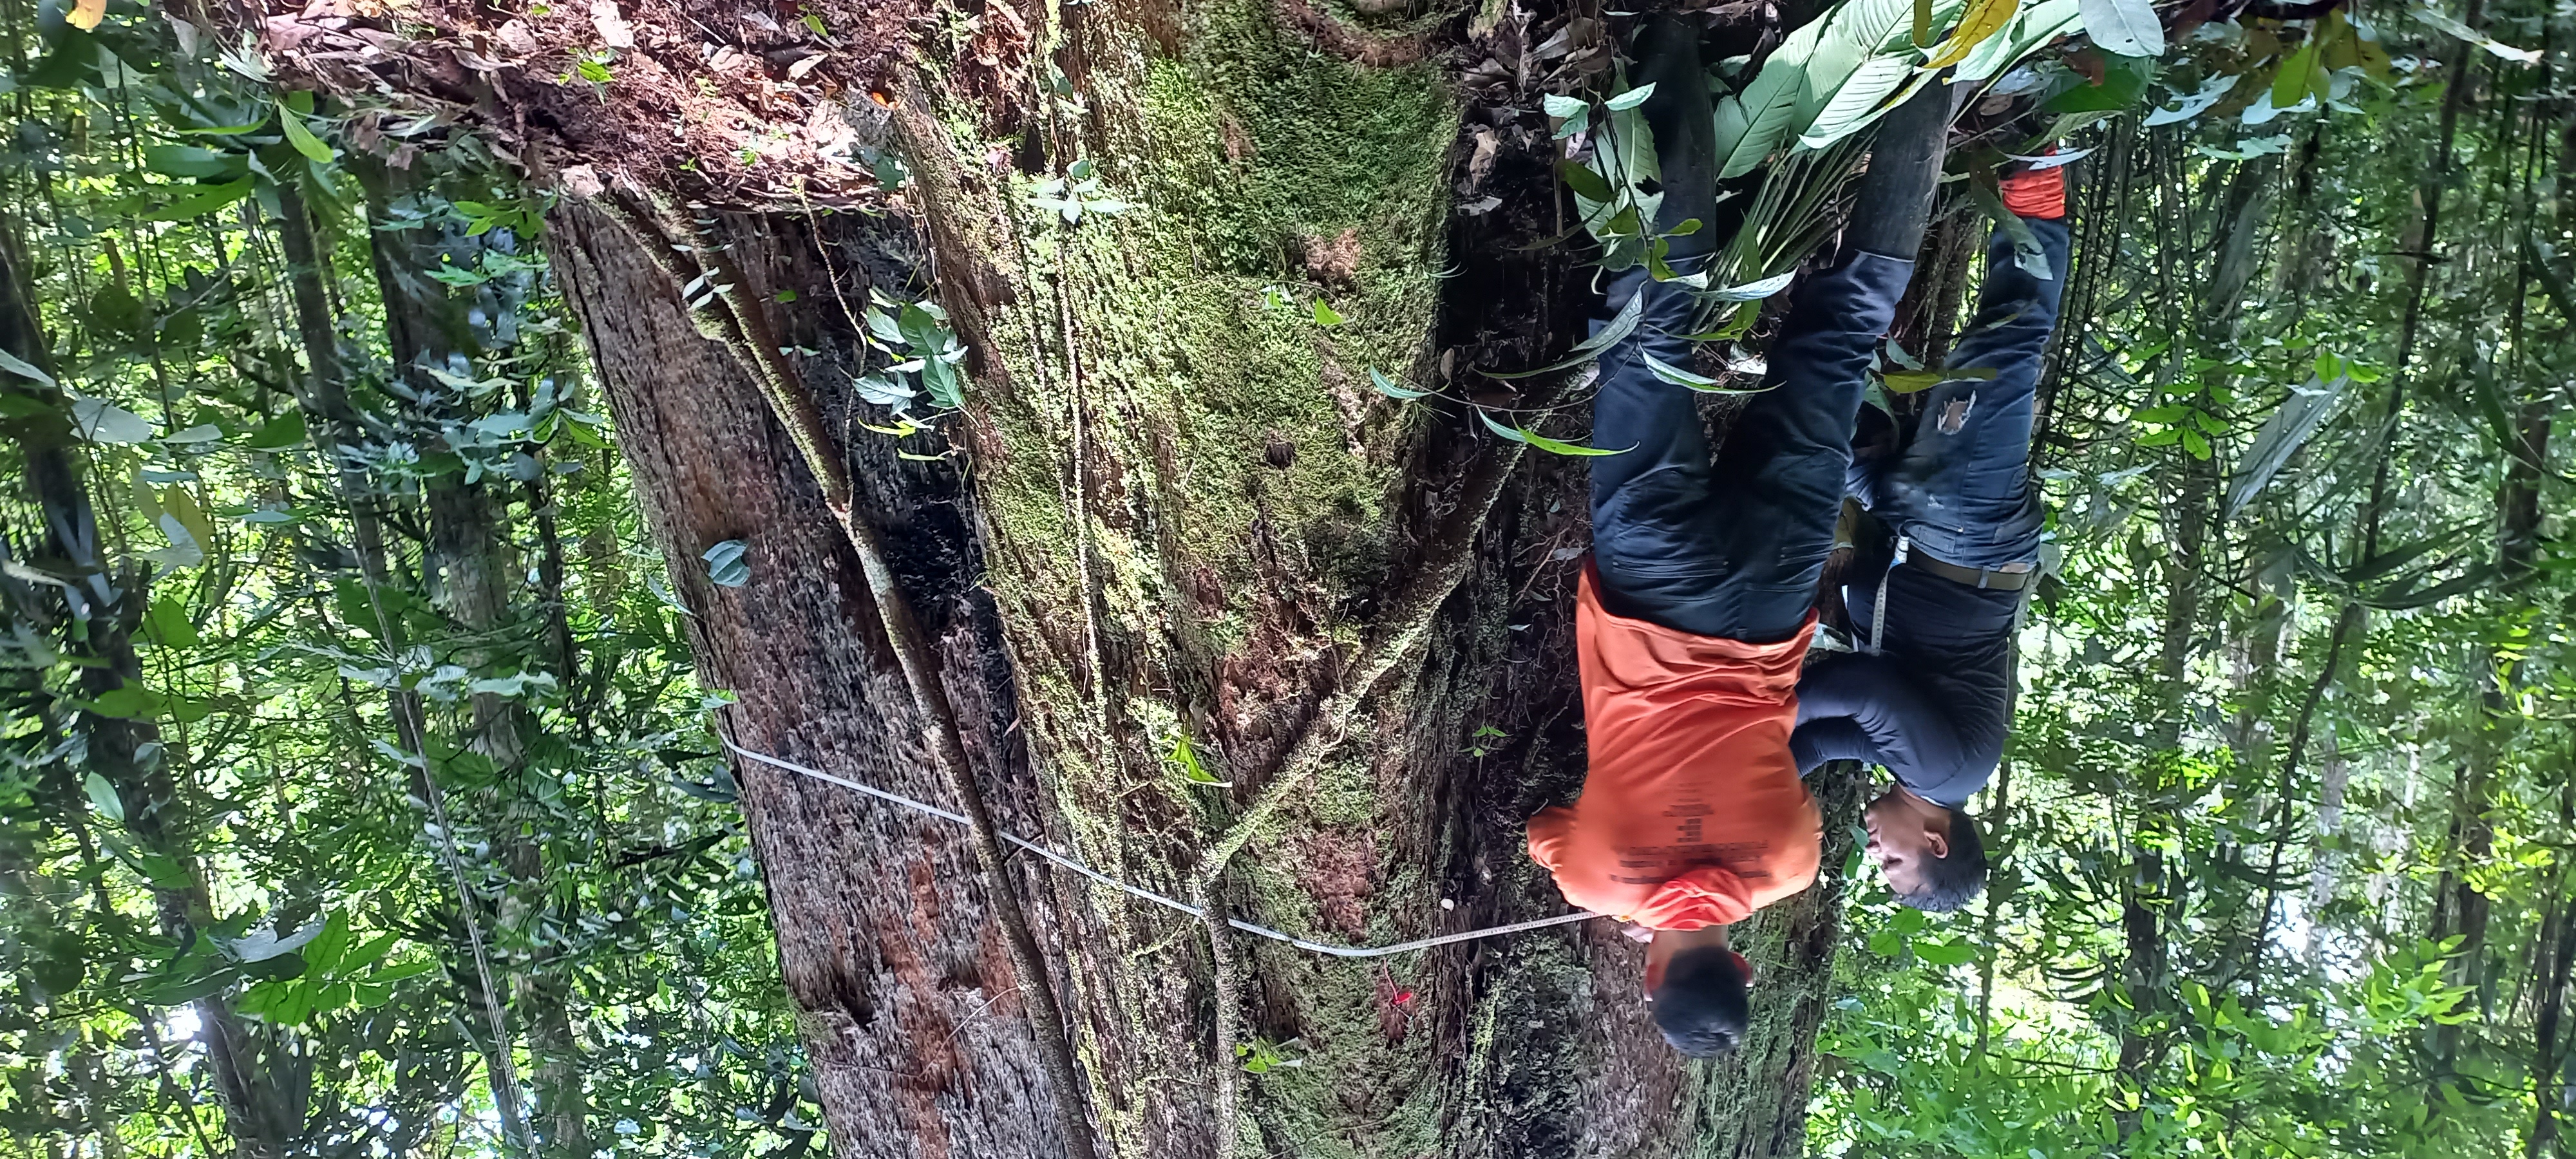 Expedição encontra a maior árvore já registrada no Amapá